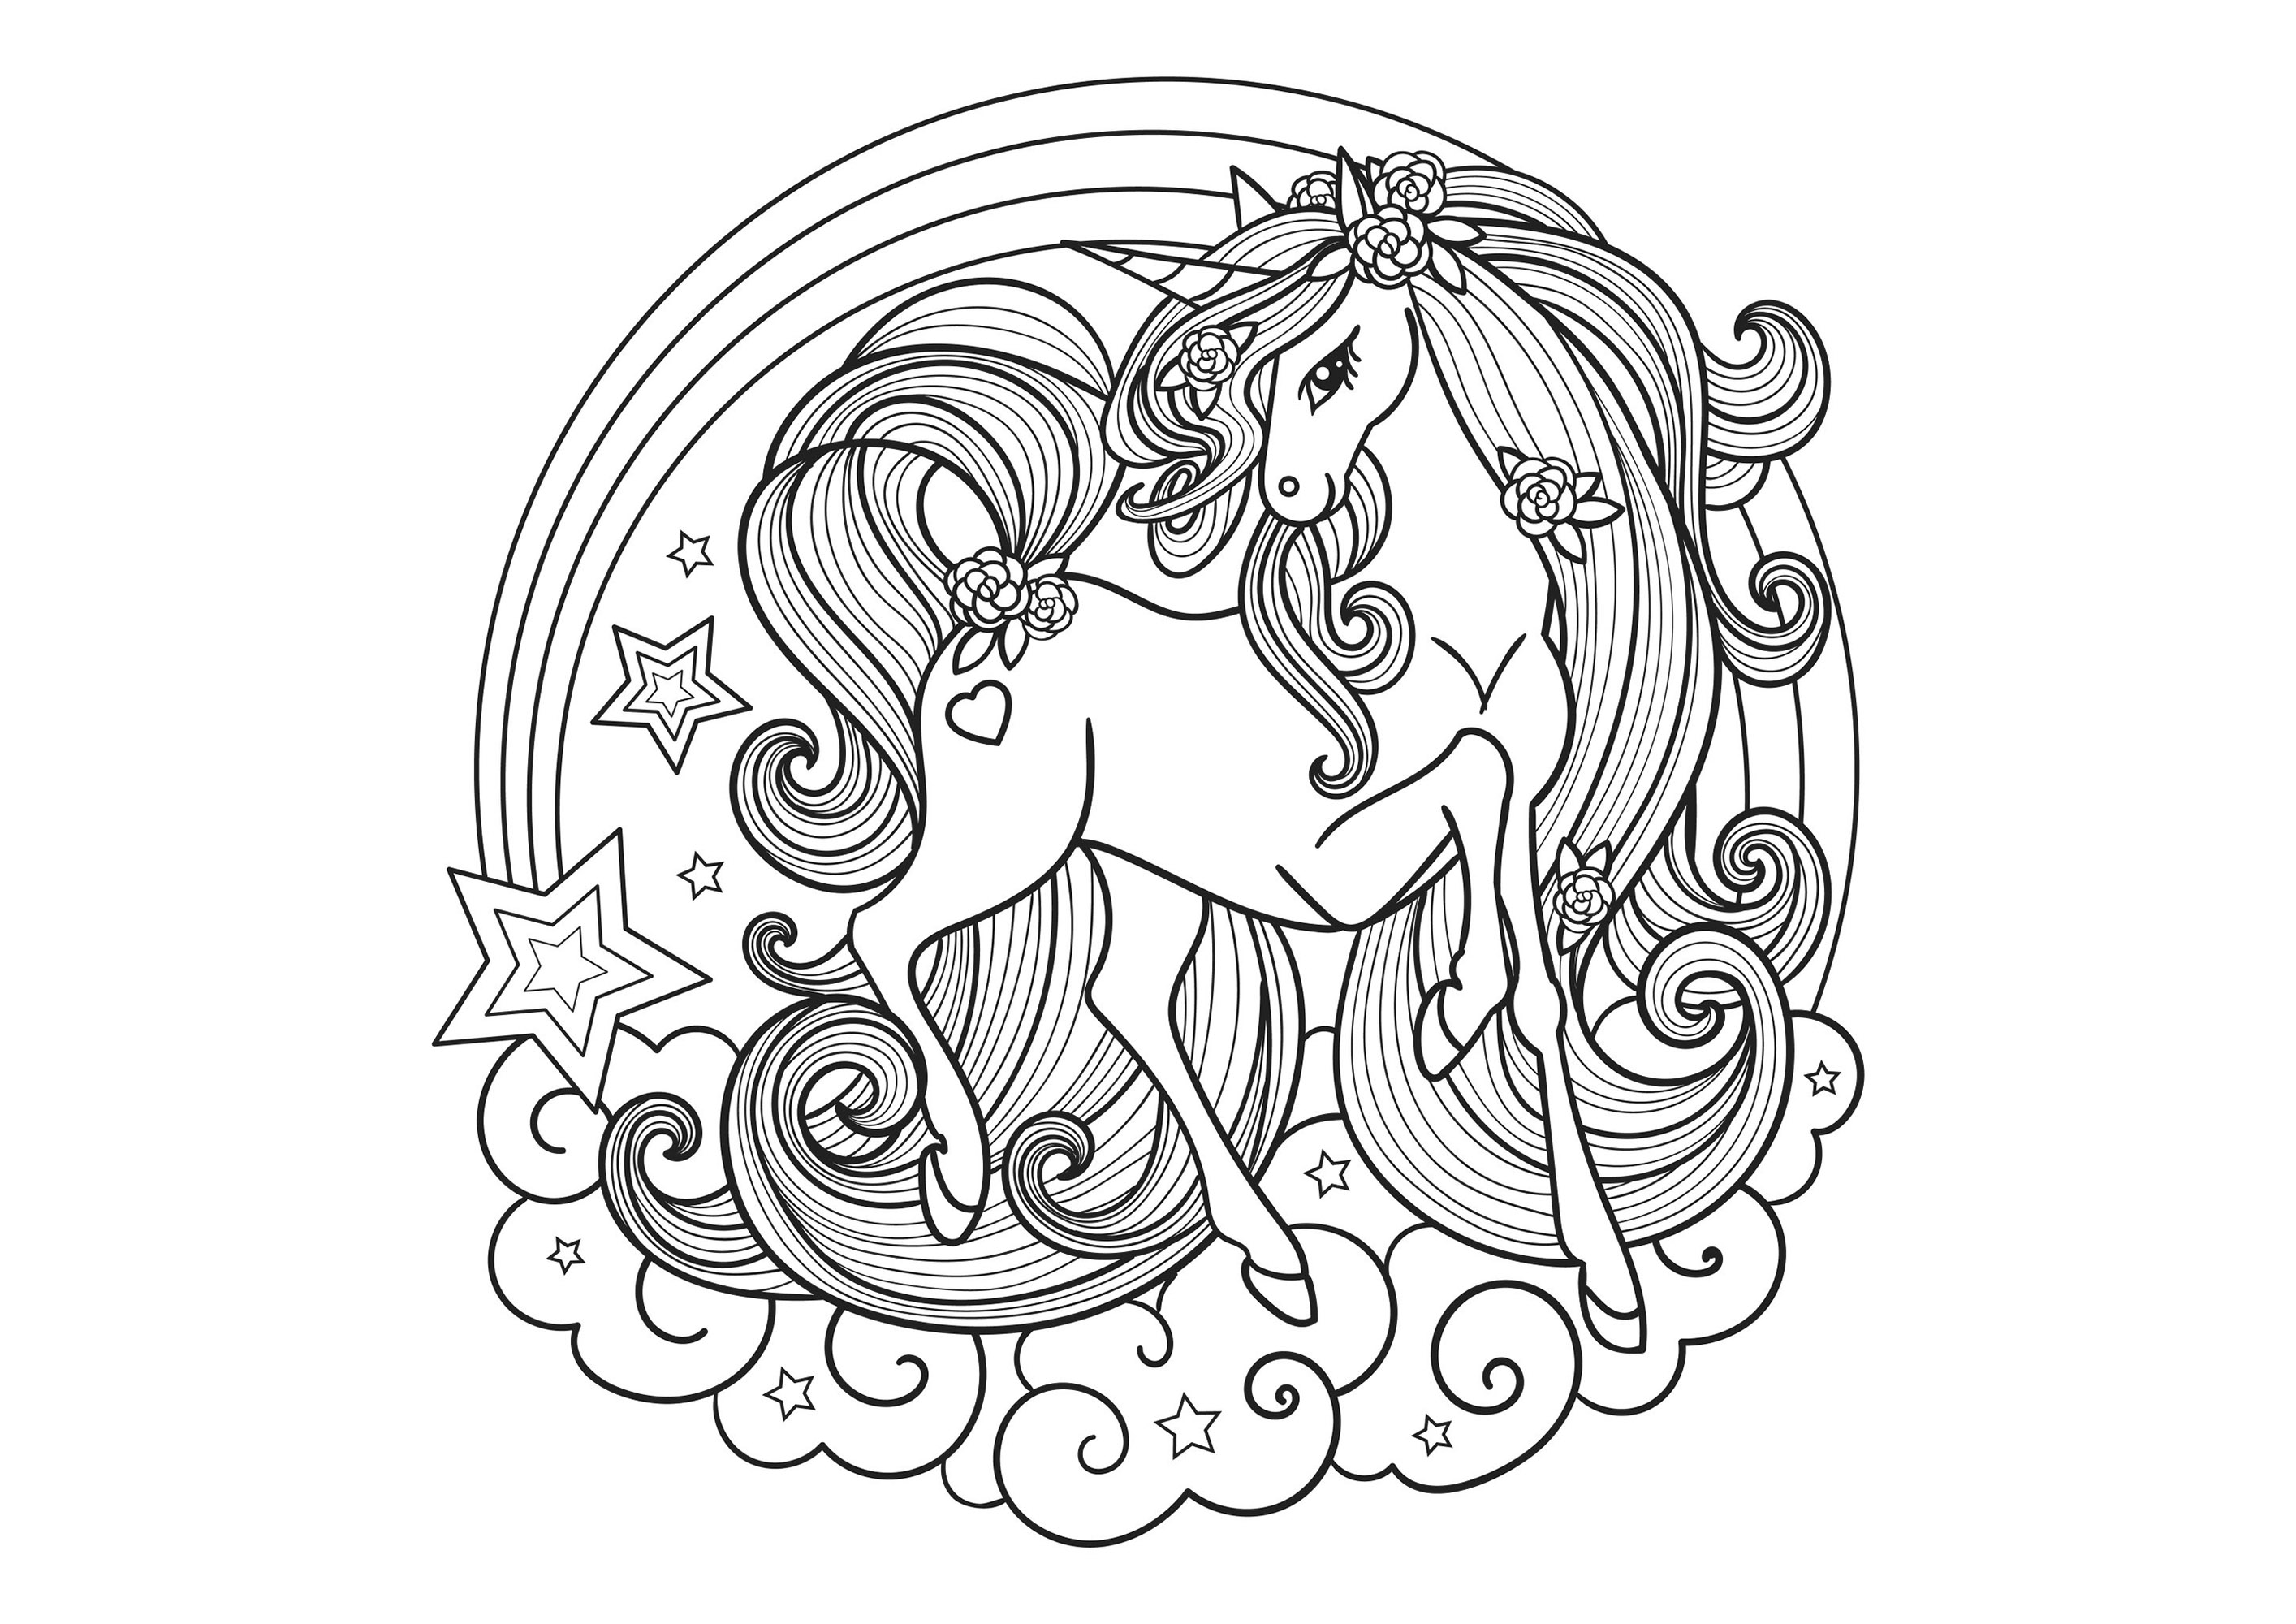 Bellissimo ed elegantissimo unicorno, all'interno di un mandala composto da nuvole e da una stella cadente.